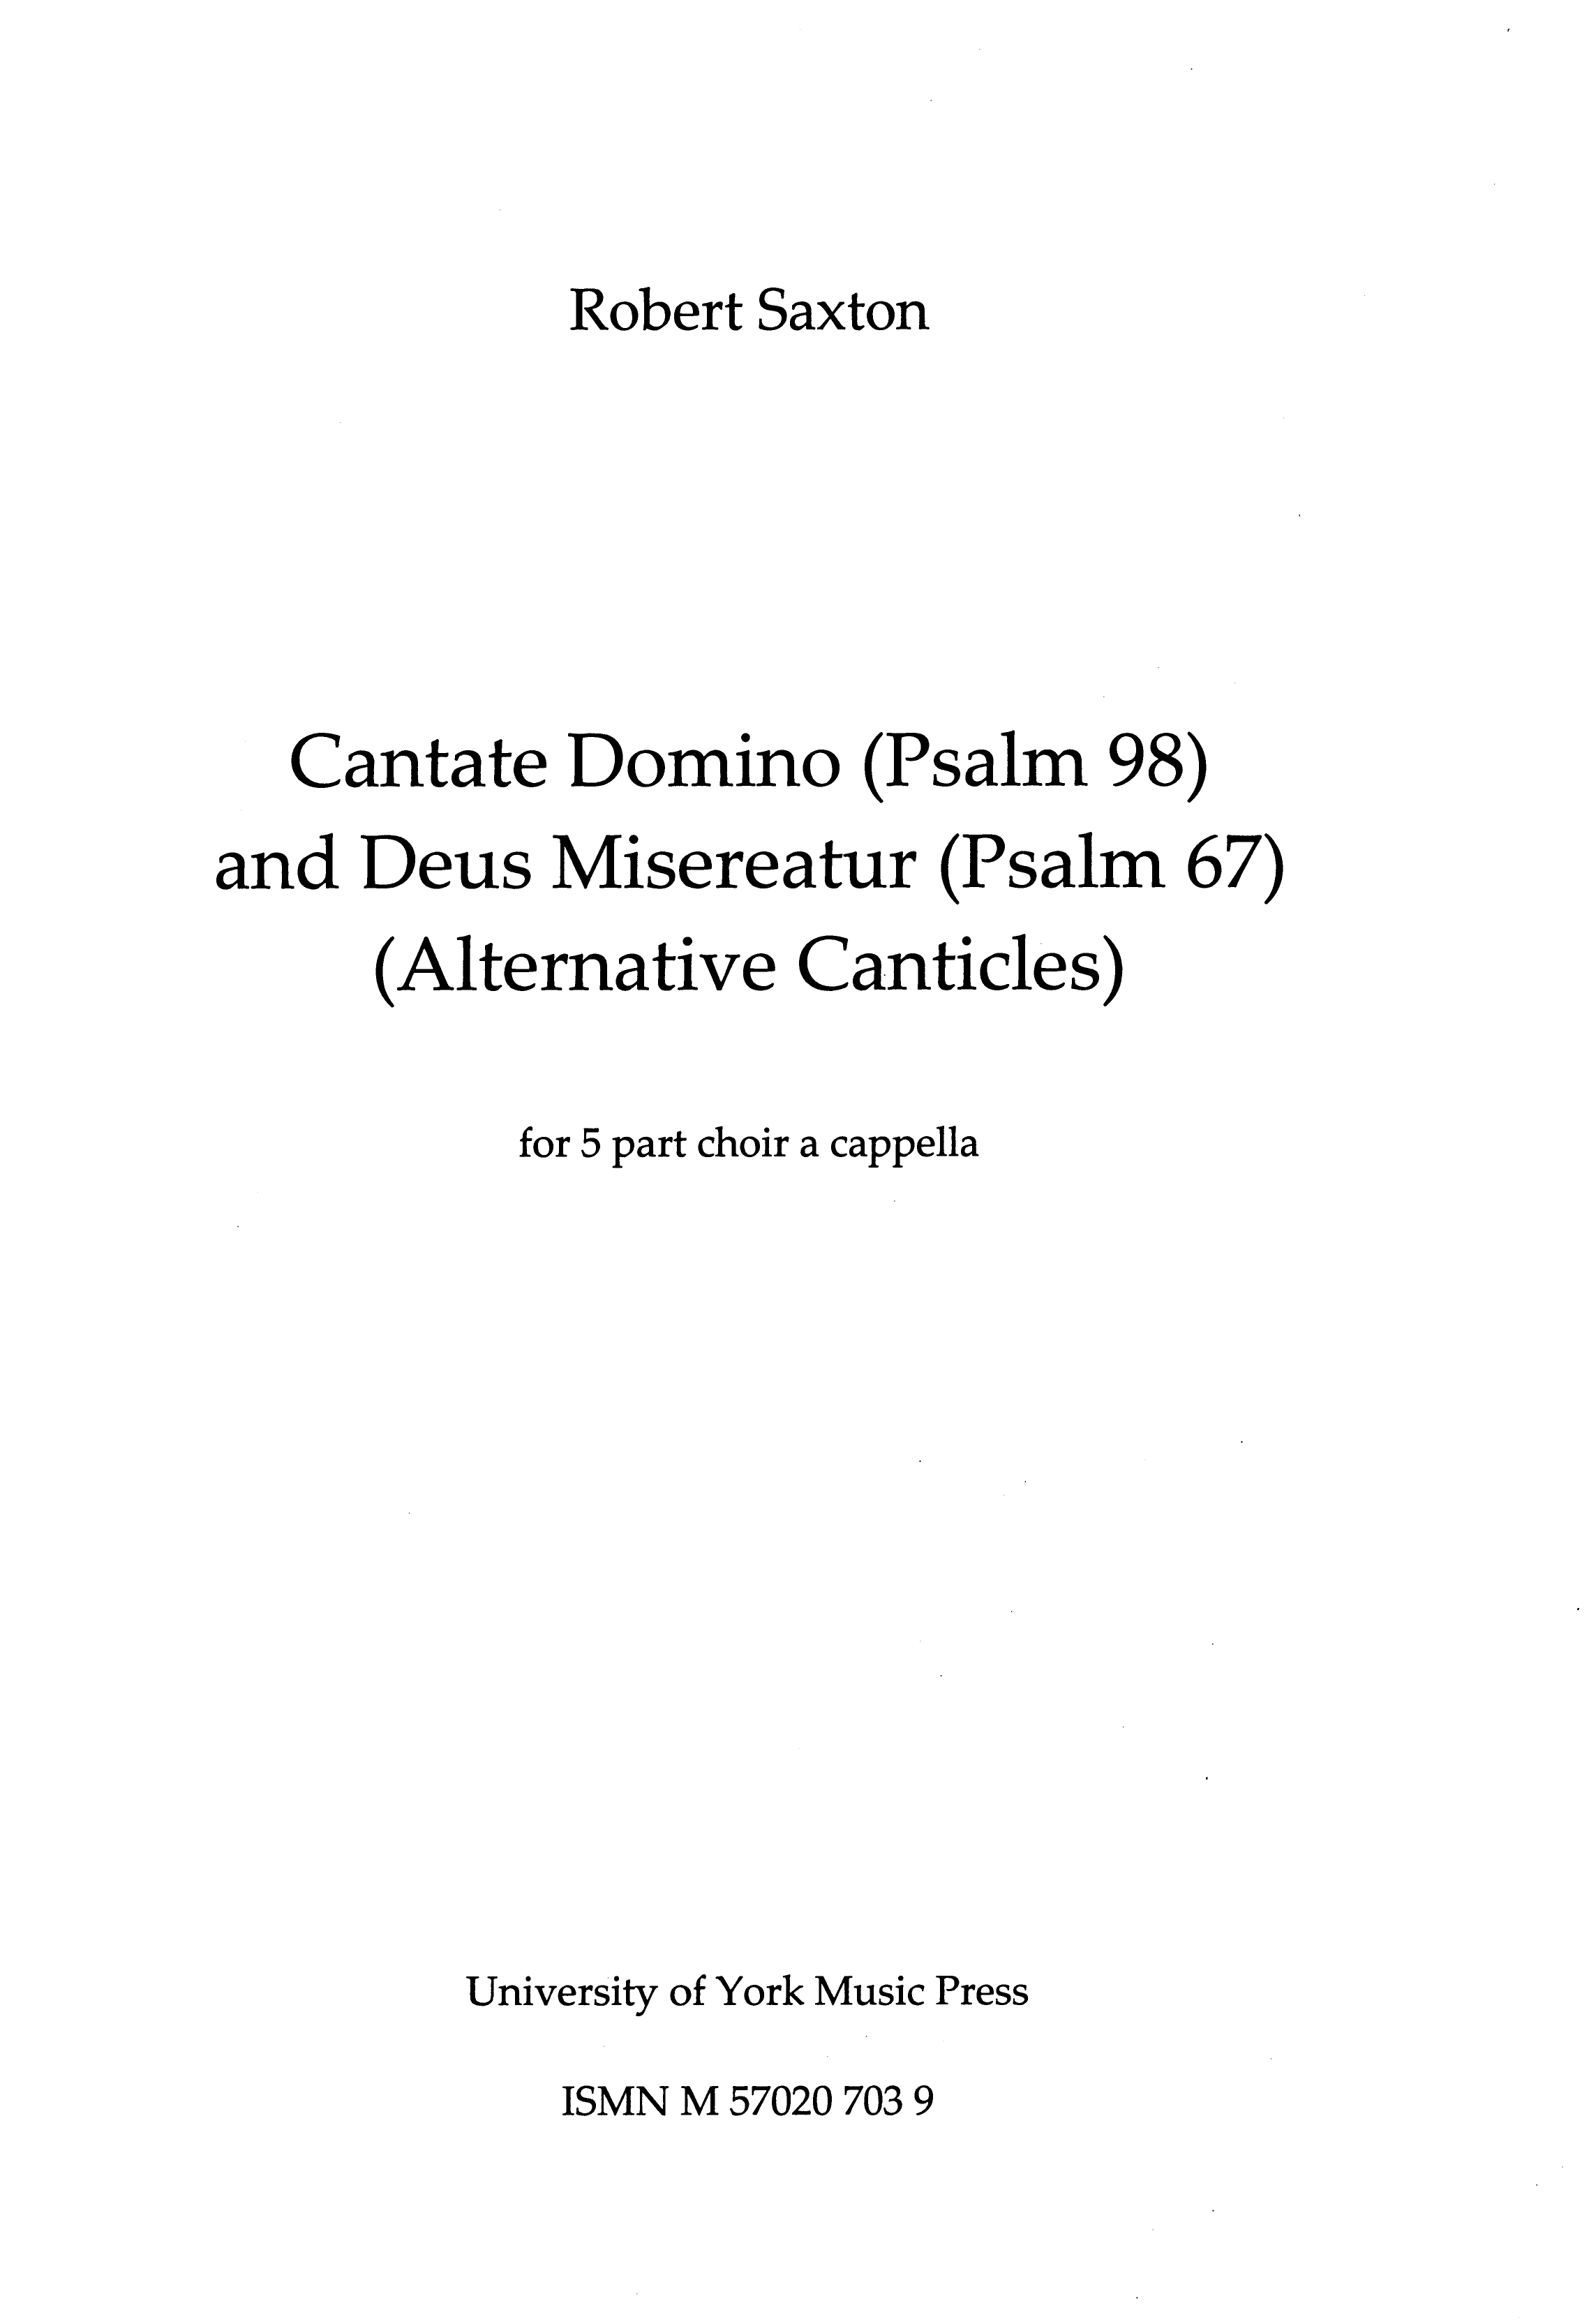 Robert Saxton: Cantate Domino & Deus Misereatur: SATB: Score